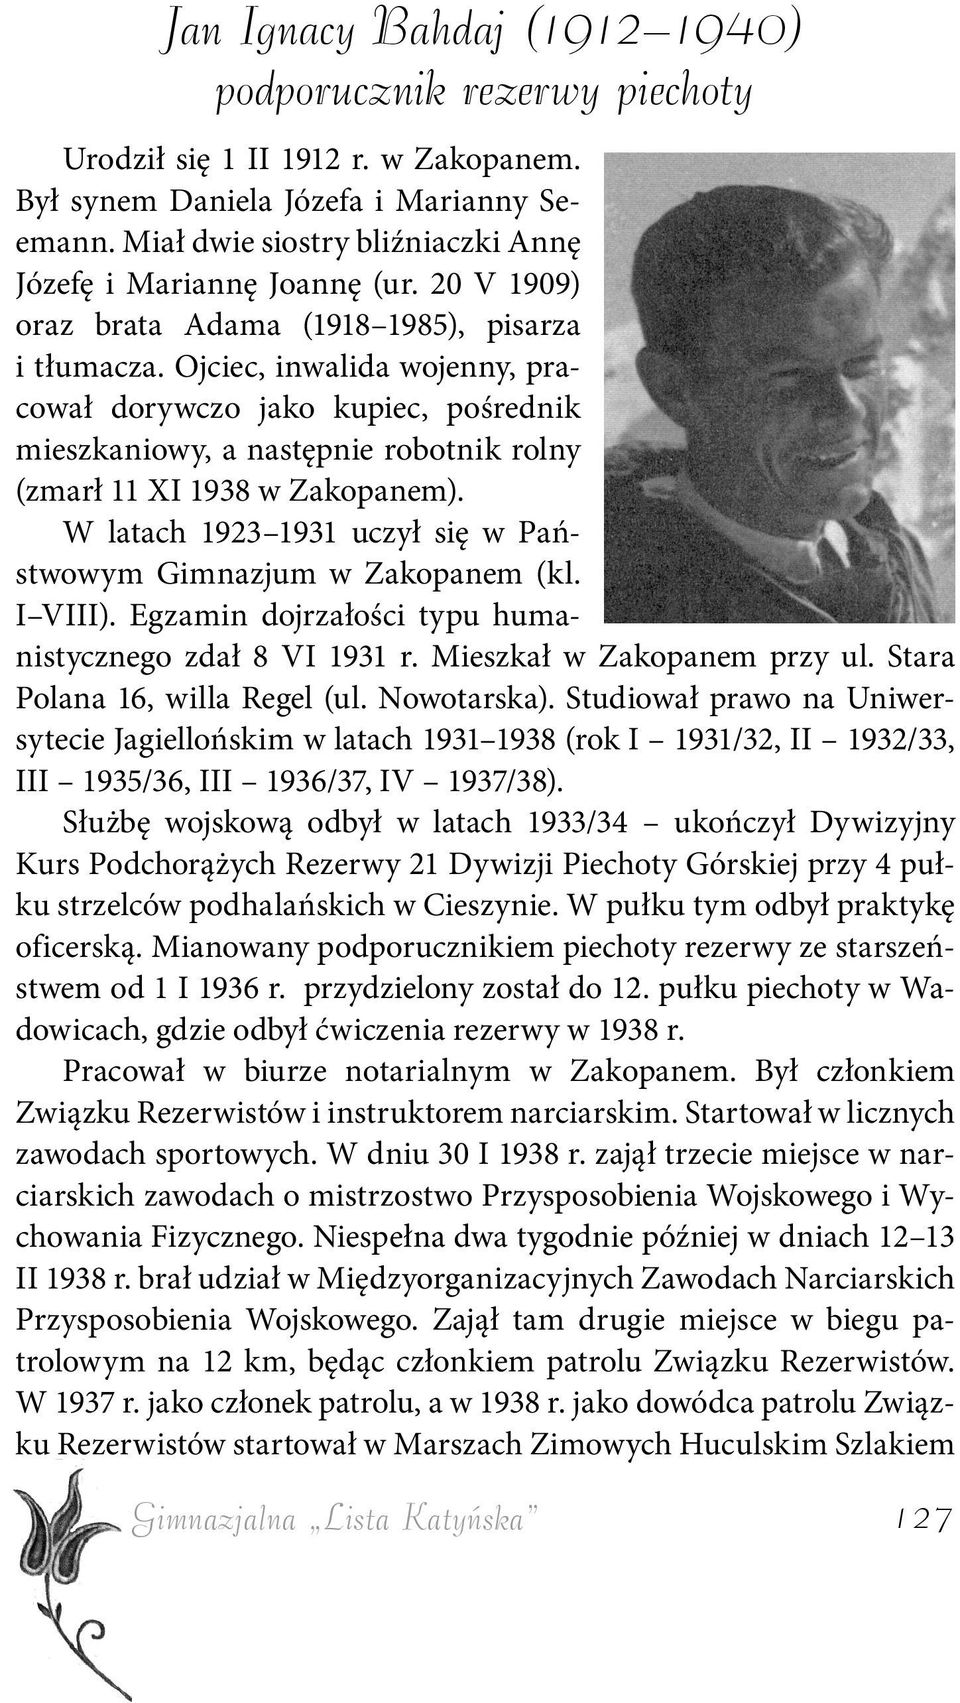 Ojciec, inwalida wojenny, pracował dorywczo jako kupiec, pośrednik mieszkaniowy, a następnie robotnik rolny (zmarł 11 XI 1938 w Zakopanem).